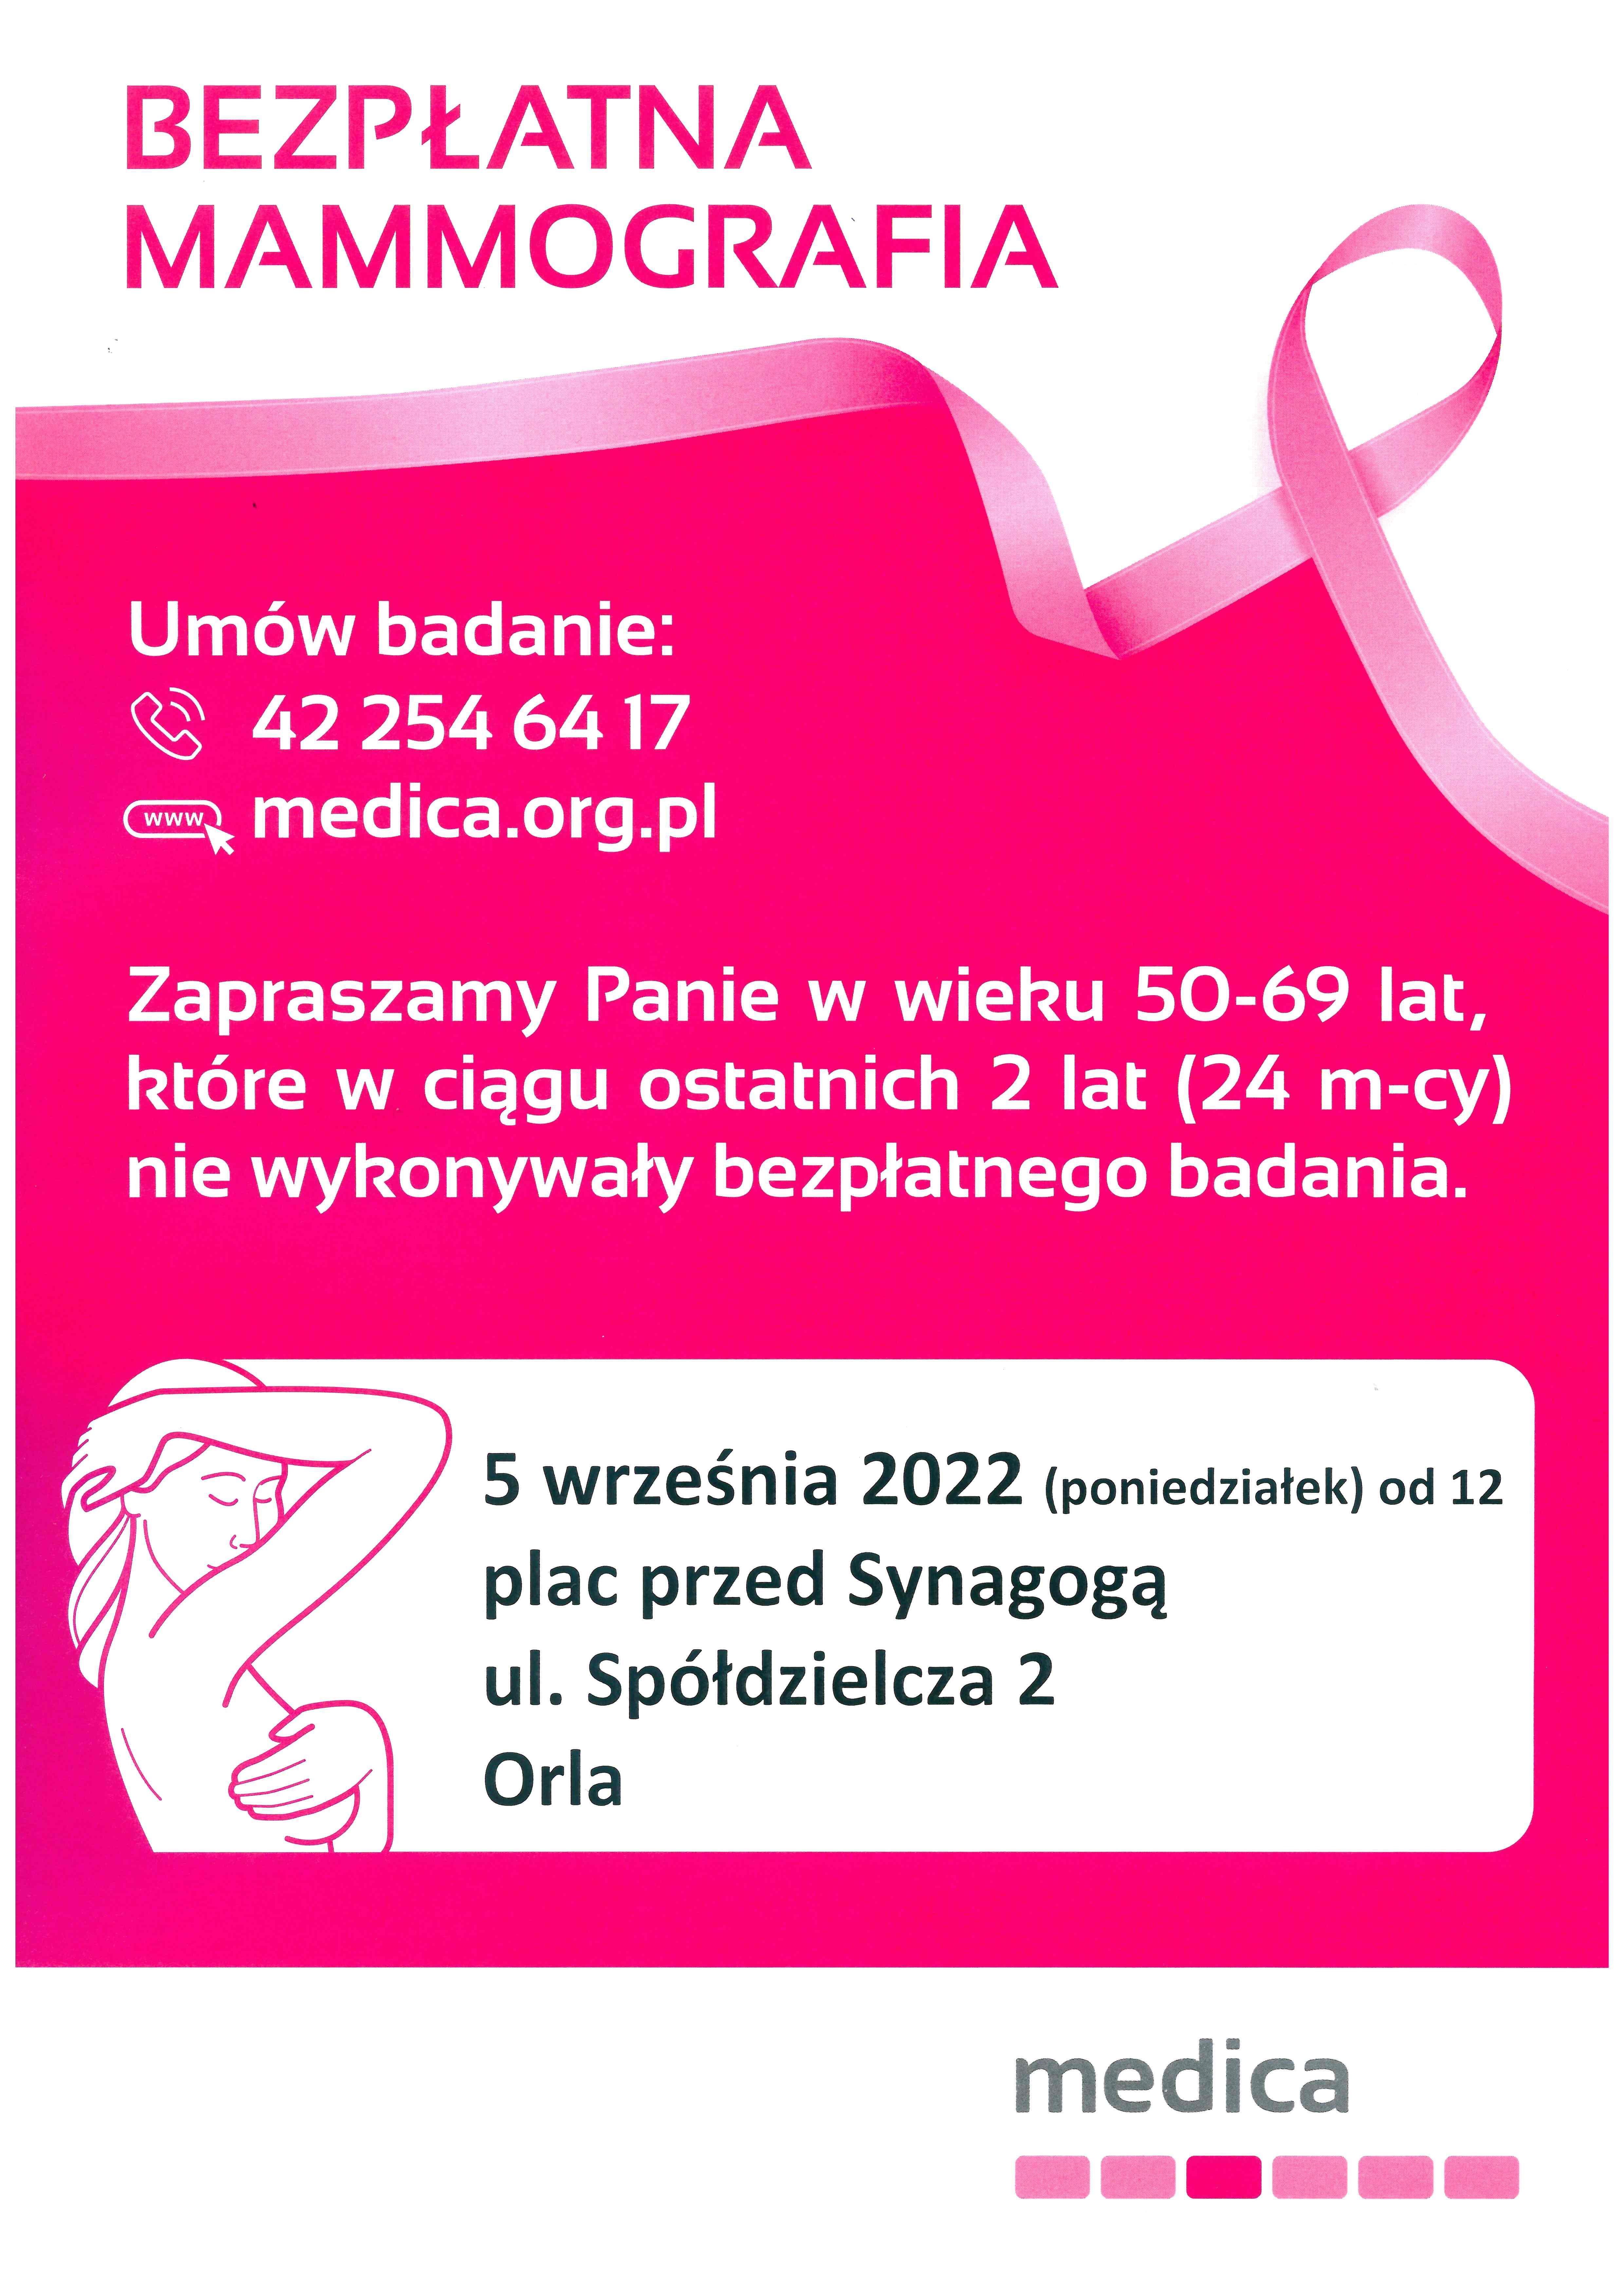 Bezpłatna mammografia 5 września na placu przed synagogą zapisy na stronie medica.org.pl lub telefonicznie 42 254 64 17